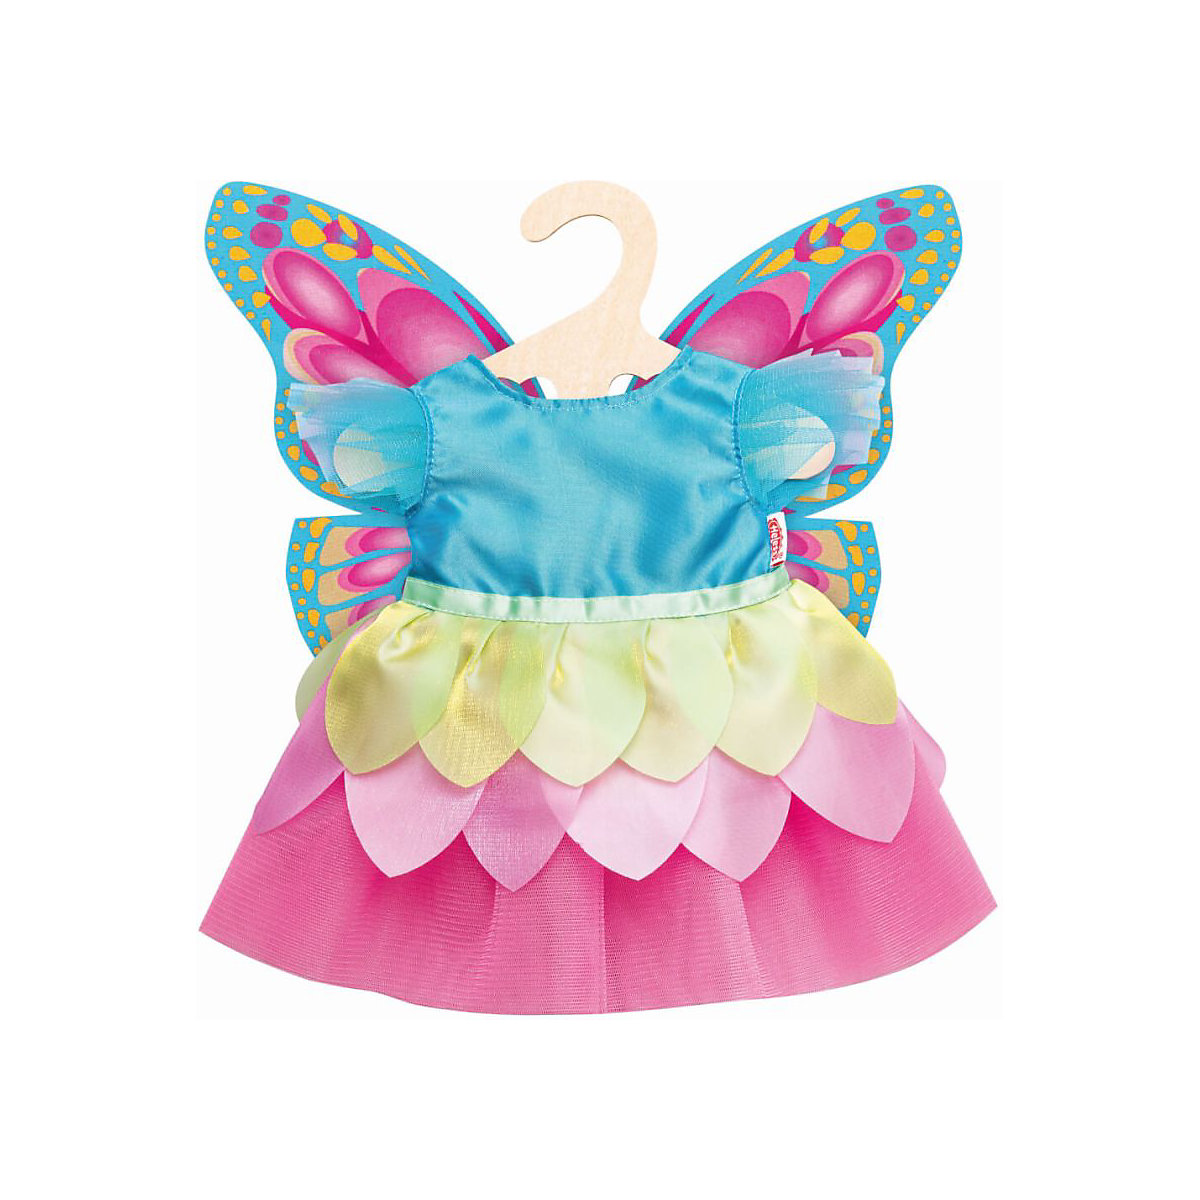 Heless Puppen-Kleid Fee Schmetterling Gr. 35-45 cm